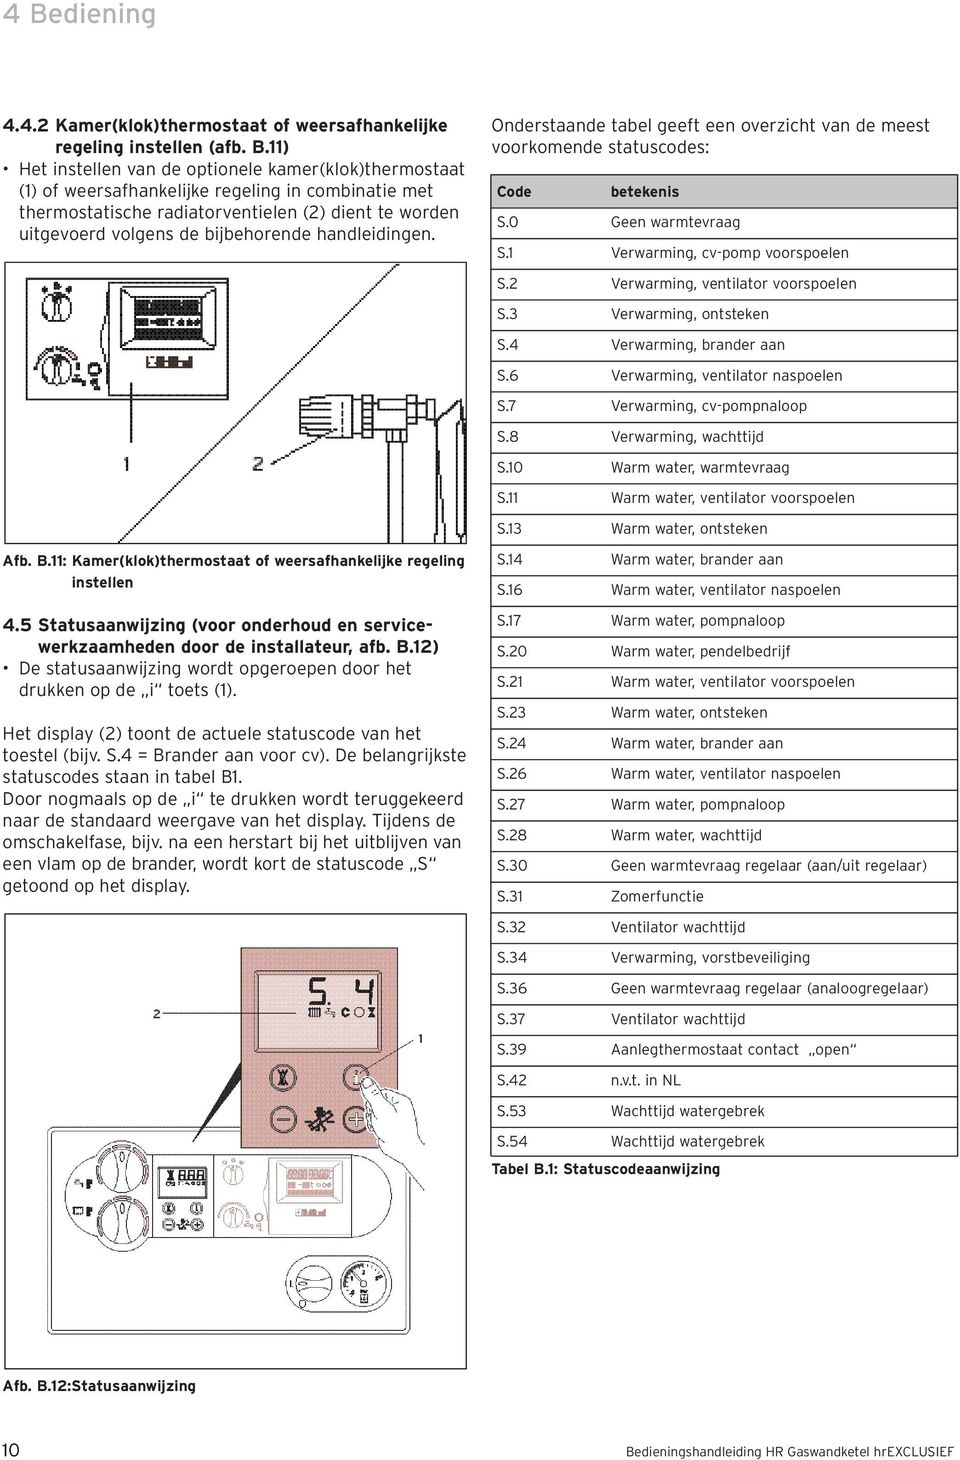 0 Geen warmtevraag S.1 Verwarming, cv-pomp voorspoelen S.2 Verwarming, ventilator voorspoelen S.3 Verwarming, ontsteken S.4 Verwarming, brander aan S.6 Verwarming, ventilator naspoelen S.